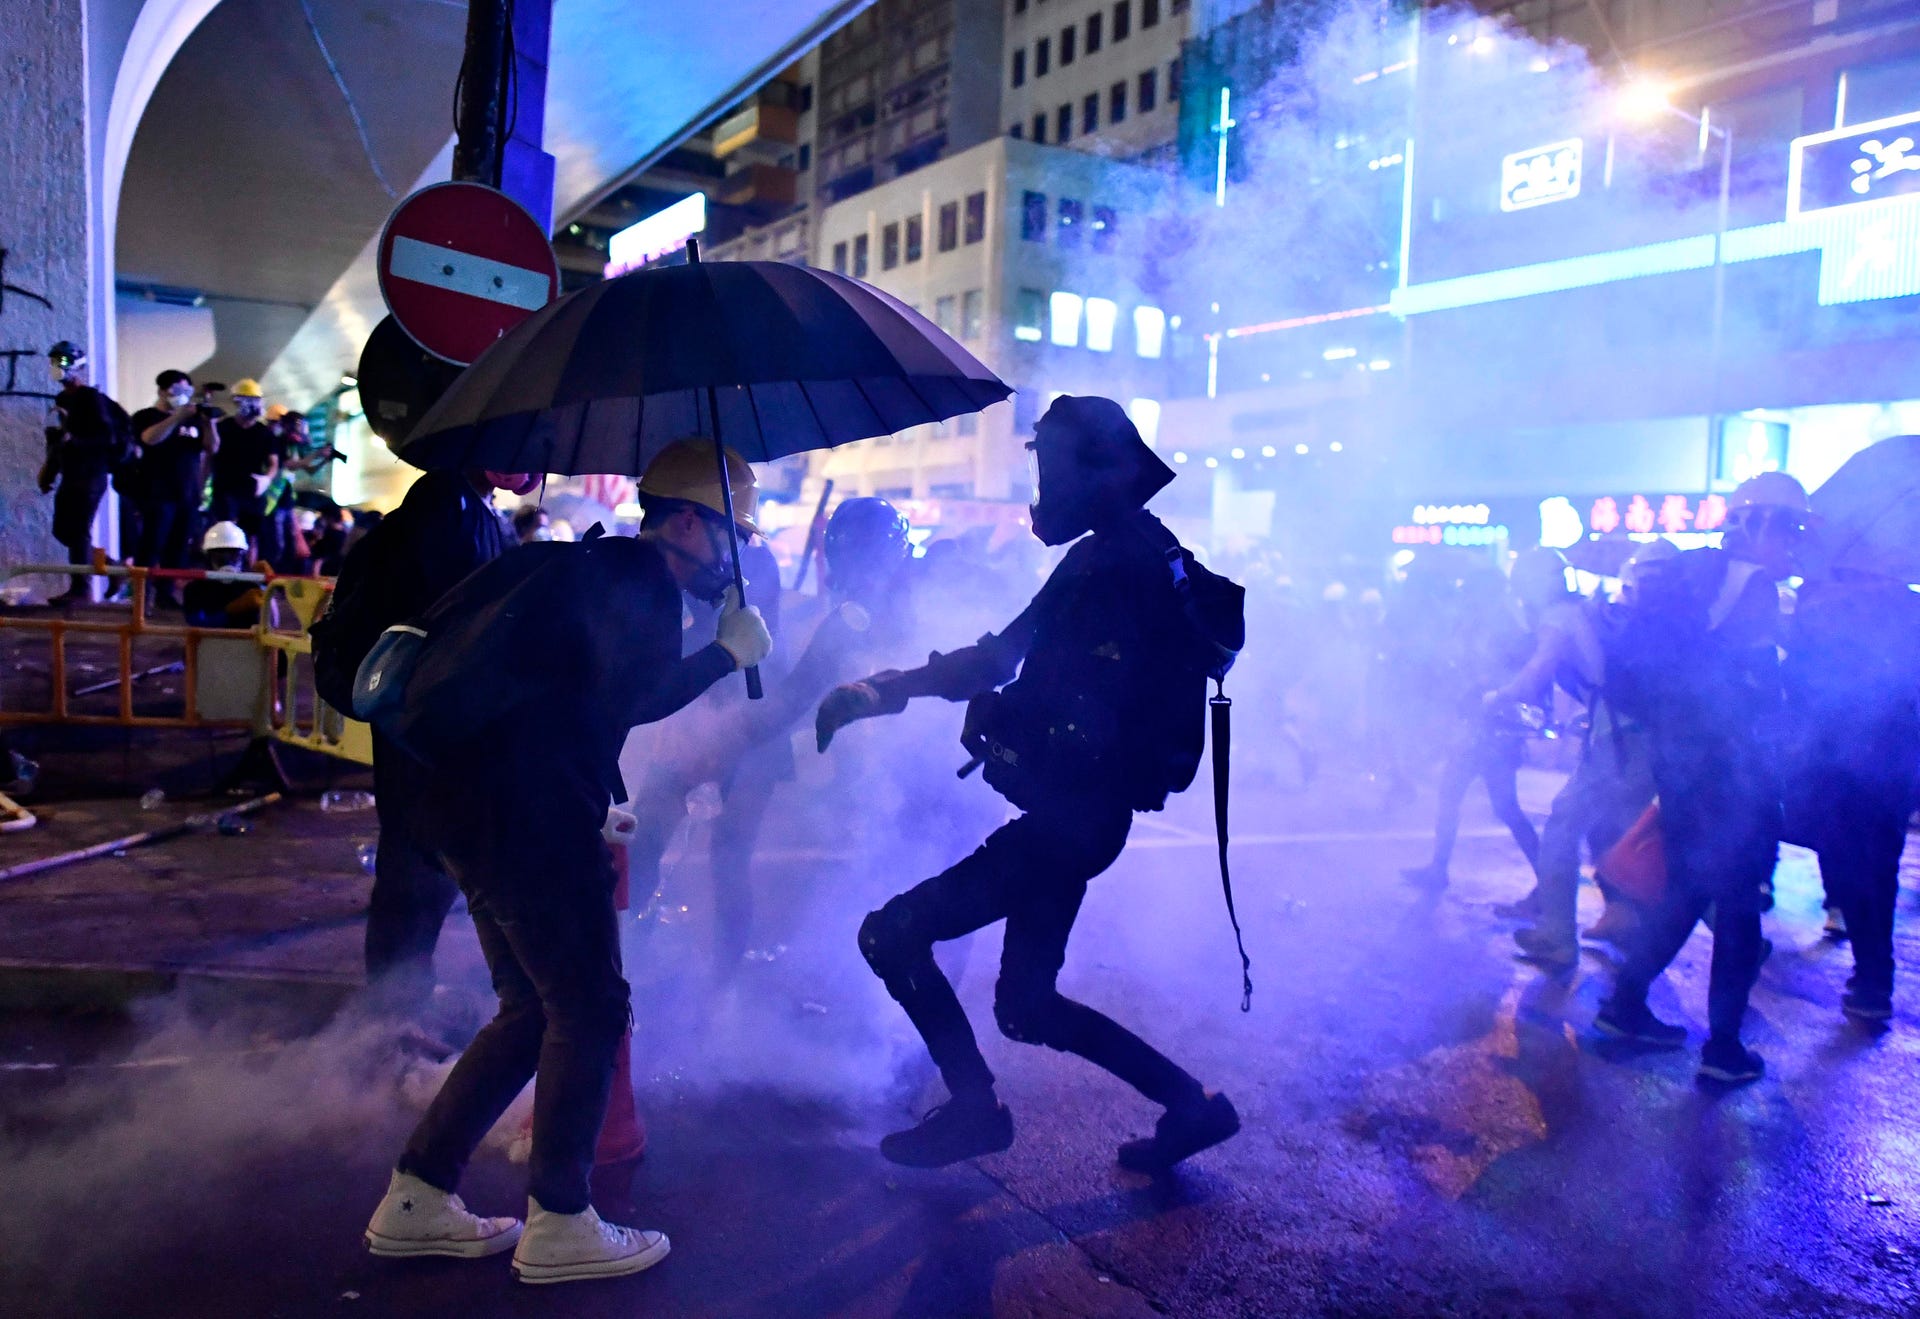  پلیس هنگ کنگ تفنگ خود را به روی معترضان نشانه گرفت +فیلم